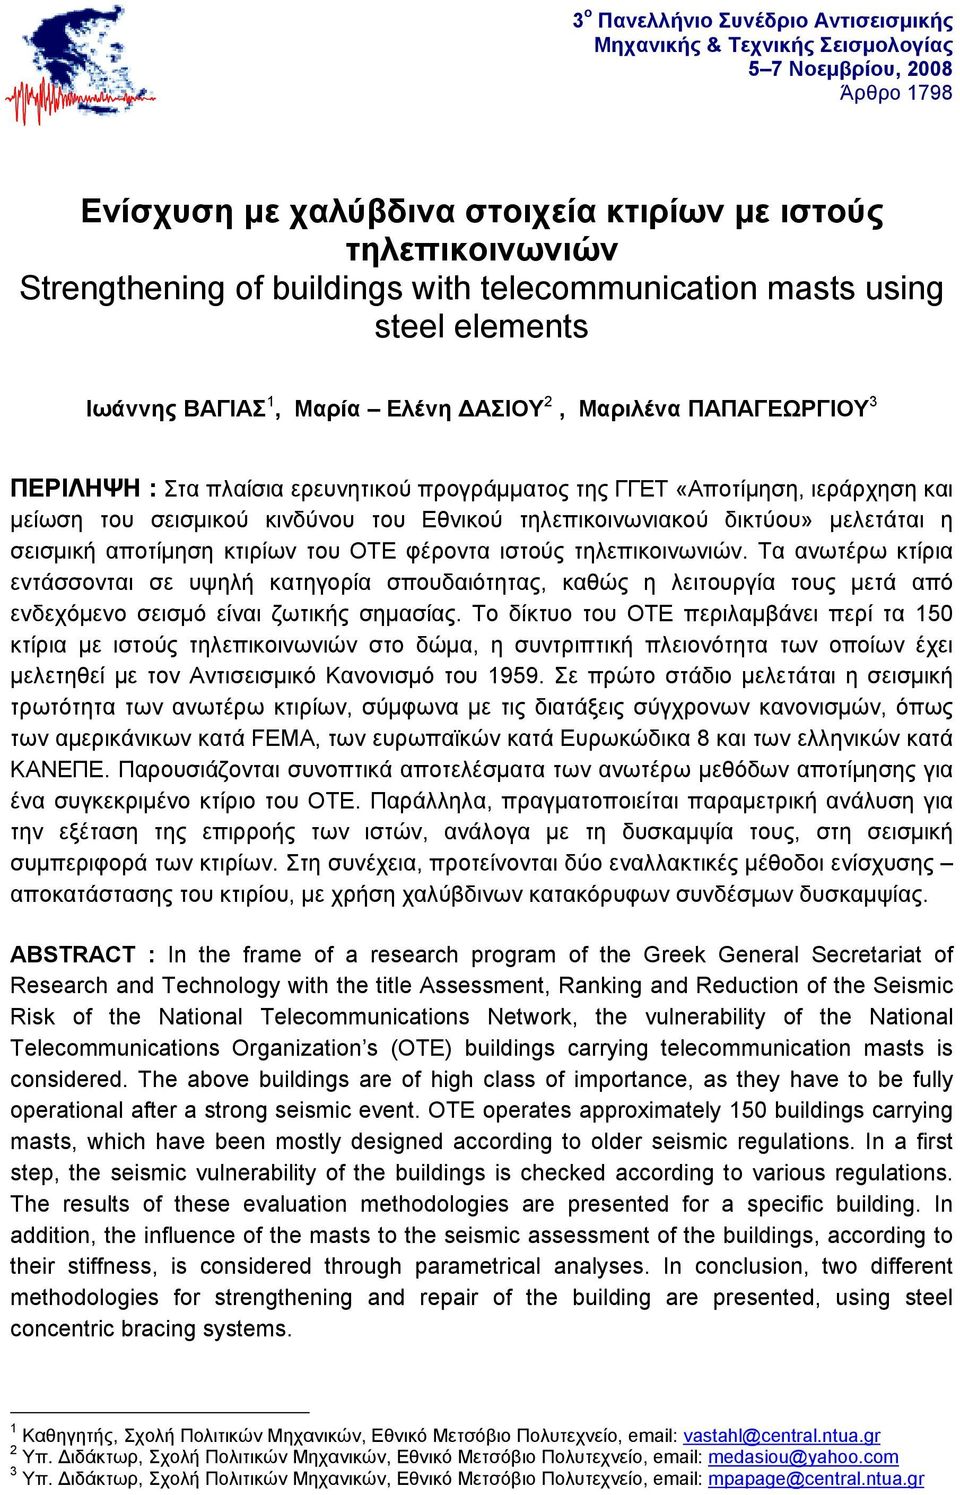 του σεισμικού κινδύνου του Εθνικού τηλεπικοινωνιακού δικτύου» μελετάται η σεισμική αποτίμηση κτιρίων του ΟΤΕ φέροντα ιστούς τηλεπικοινωνιών.